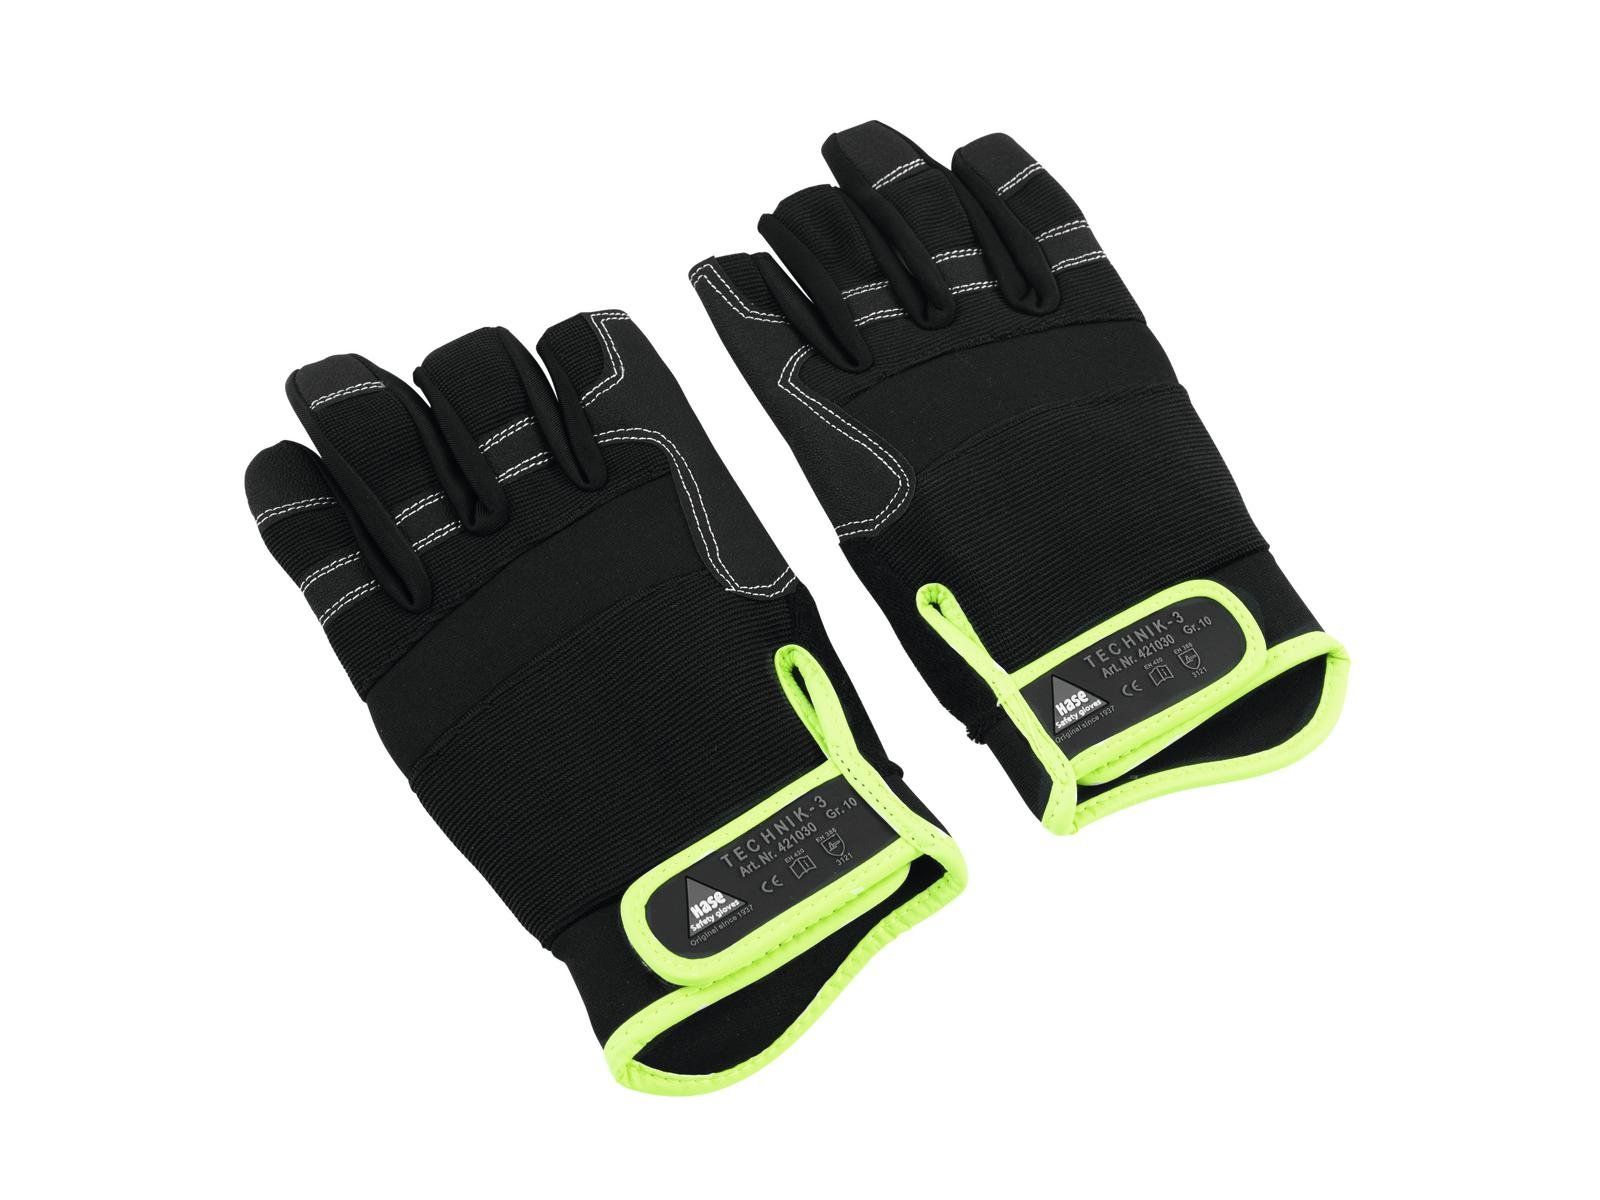 HASE Gloves 3 Finger size L